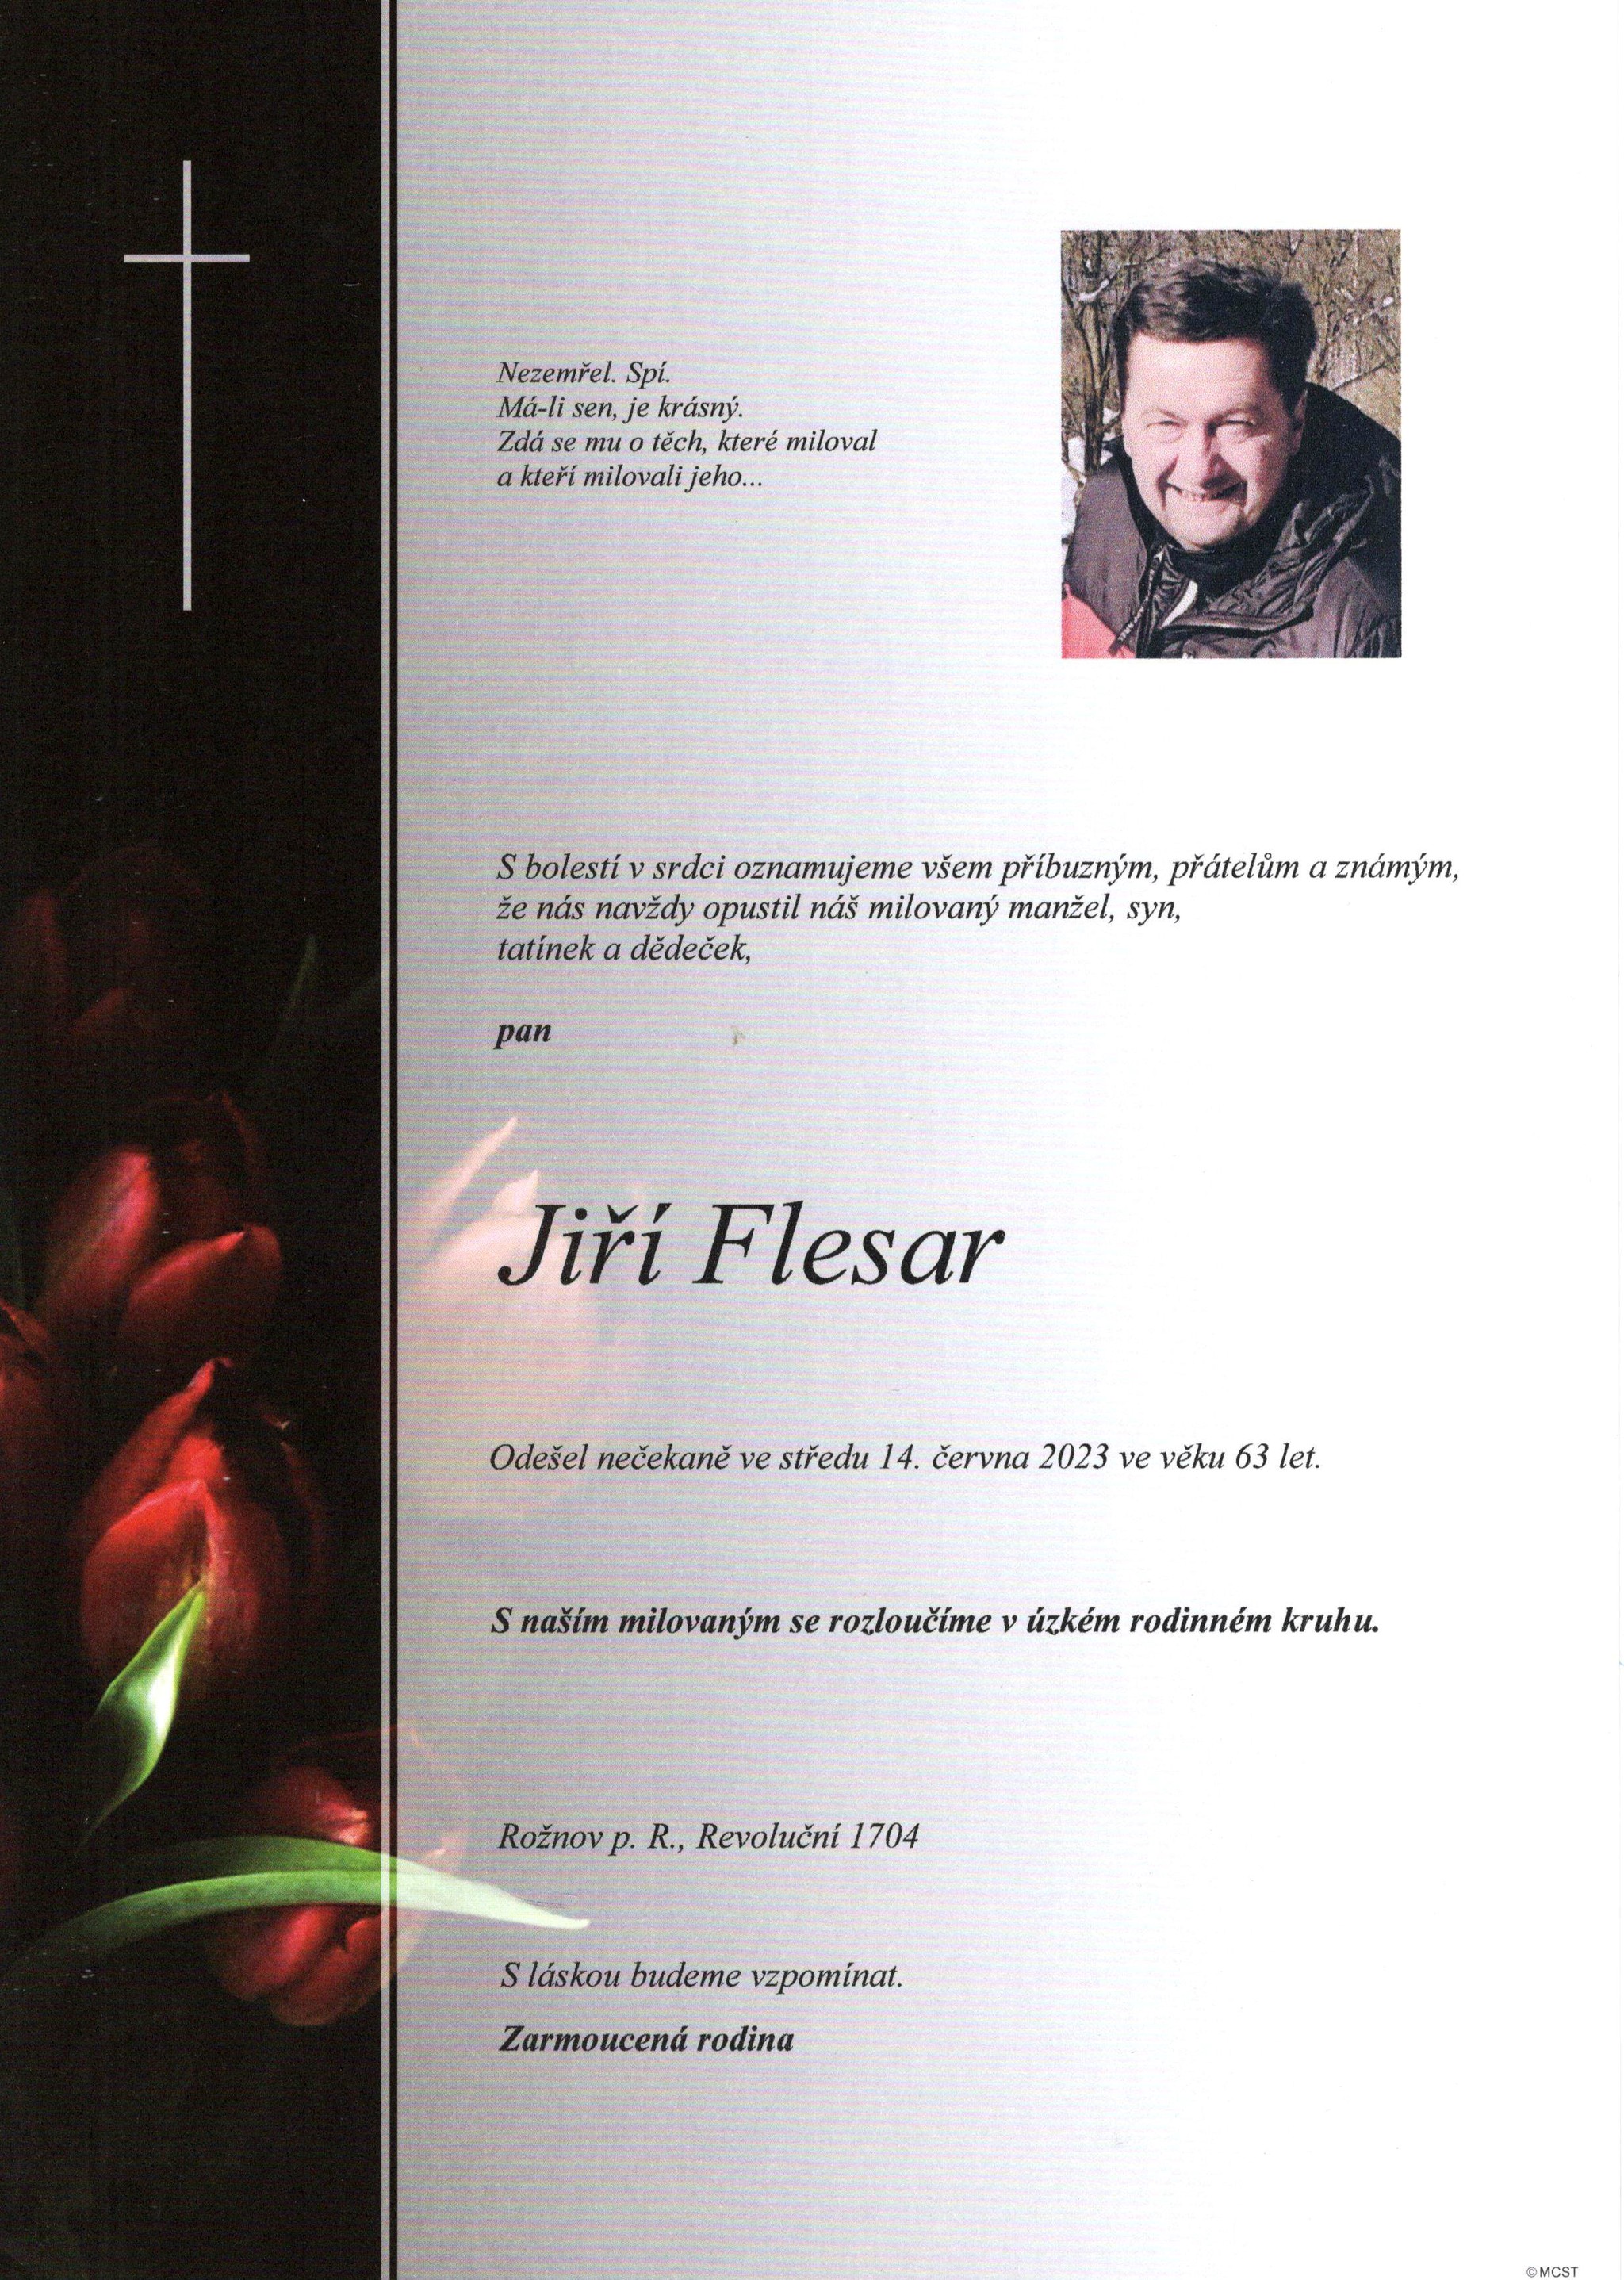 Jiří Flesar